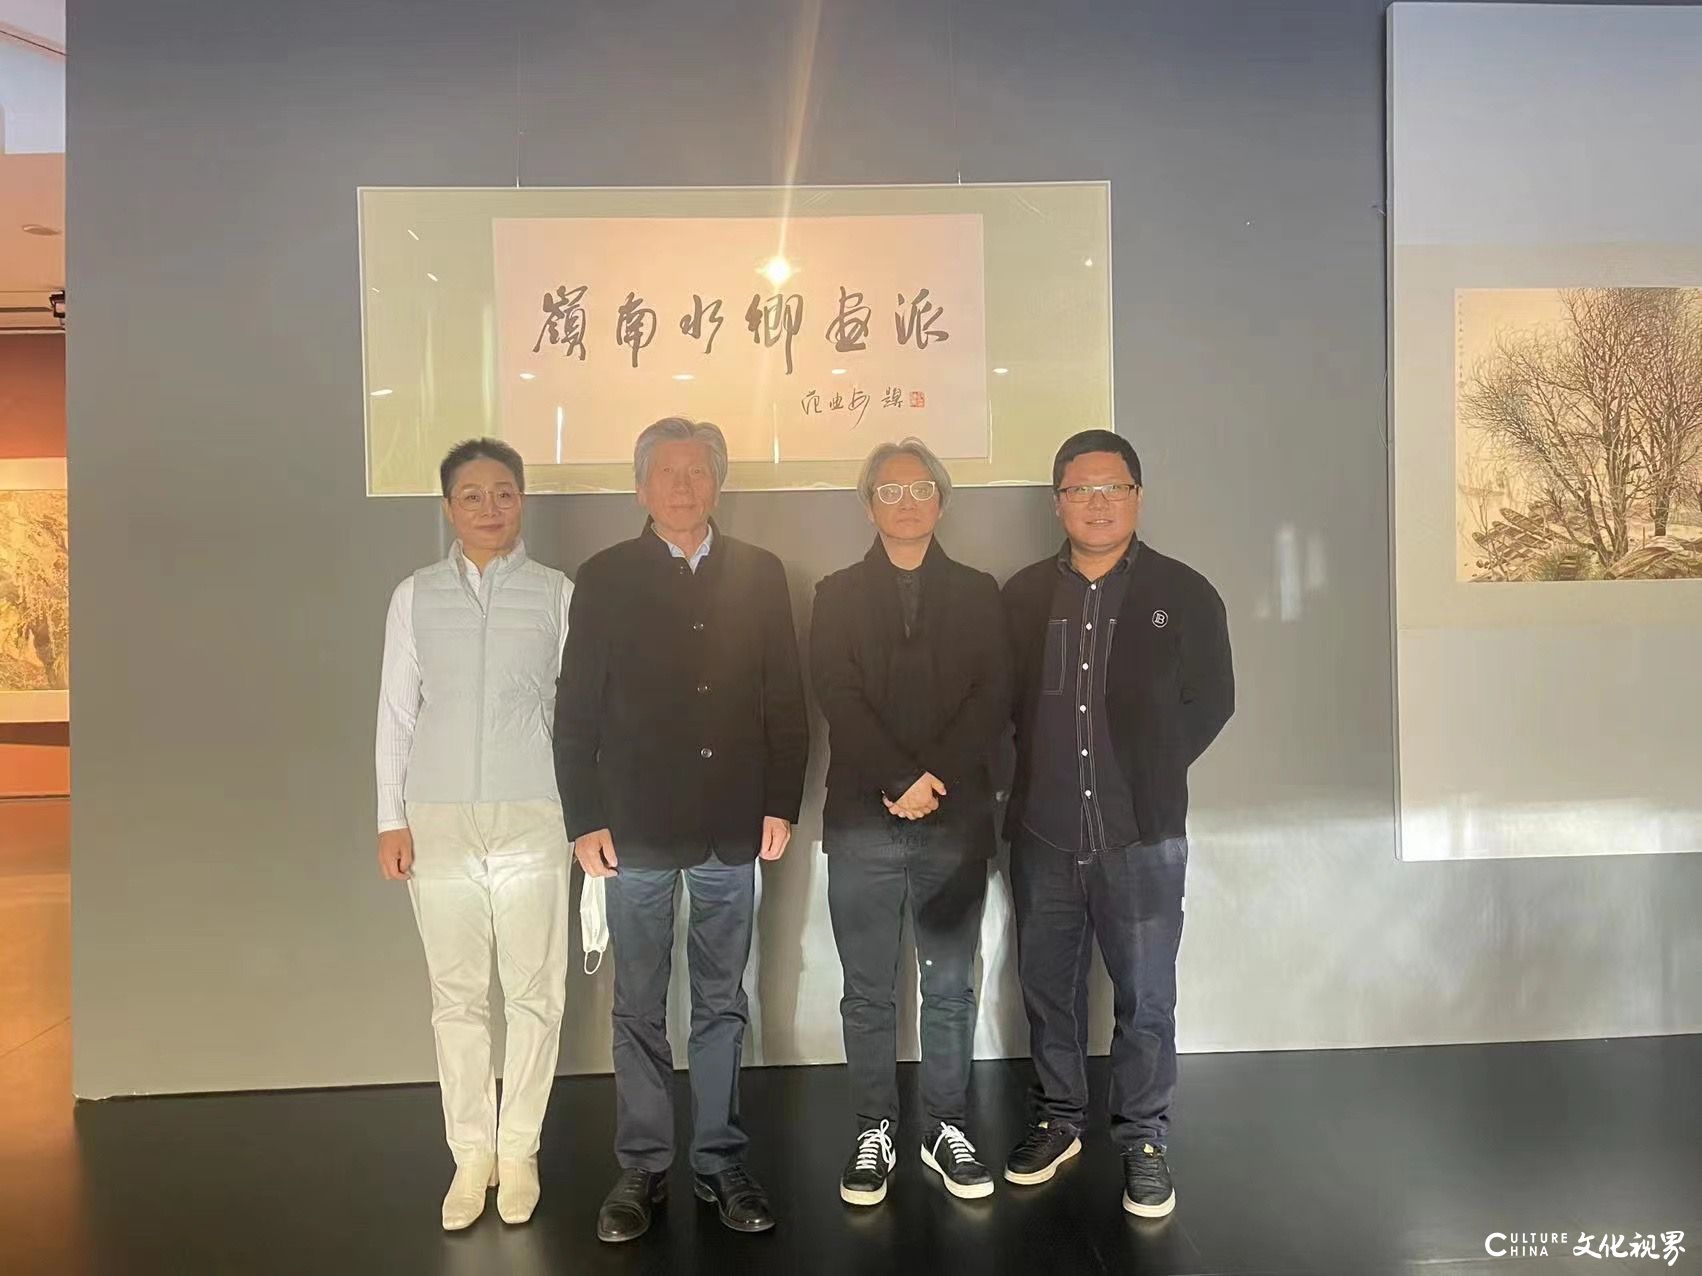 “溢彩流光写风情——岭南水乡画派50周年纪念展”研讨会在北京举办